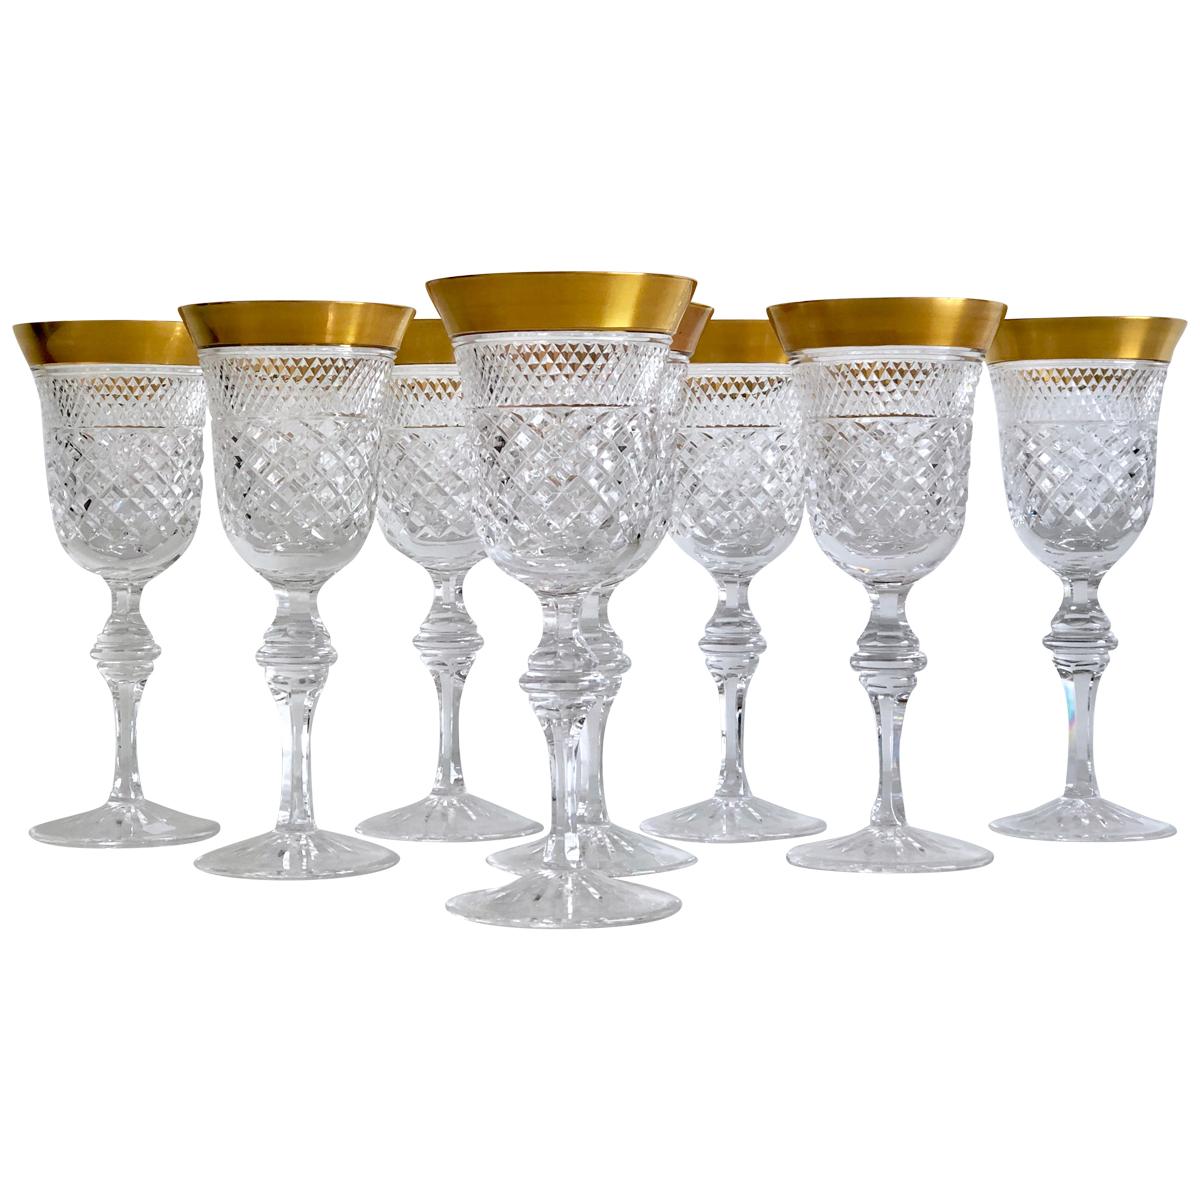 Set of 8 Crystal Wine Glasses Victoria Gold by Klokotschnik Zwiesel, Germany